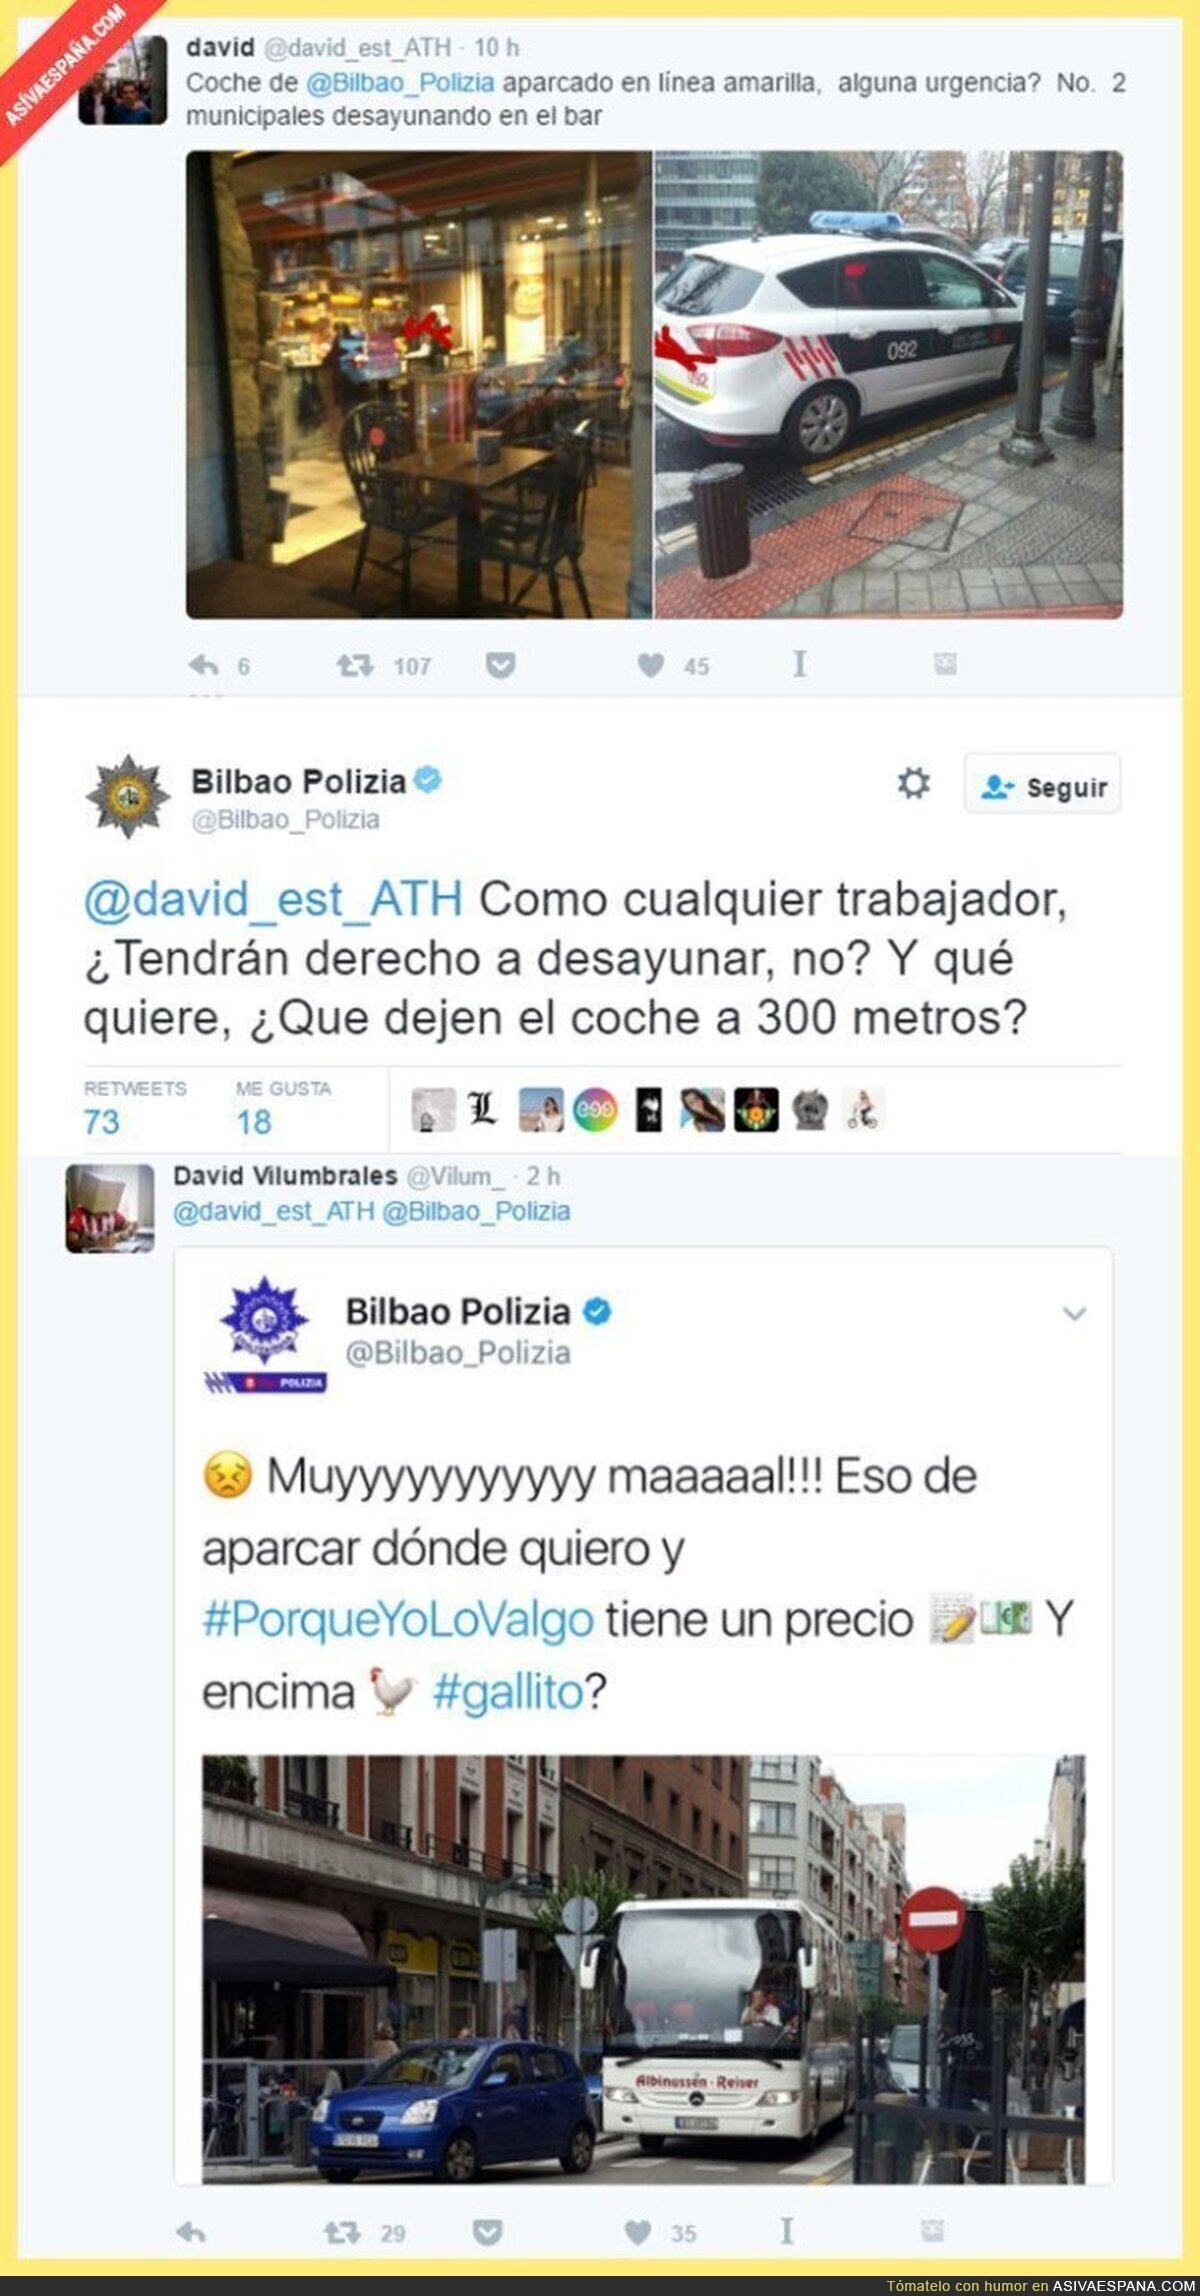 La Policía de Bilbao deja el coche para desayunar en línea amarilla y su excusa es ridícula...